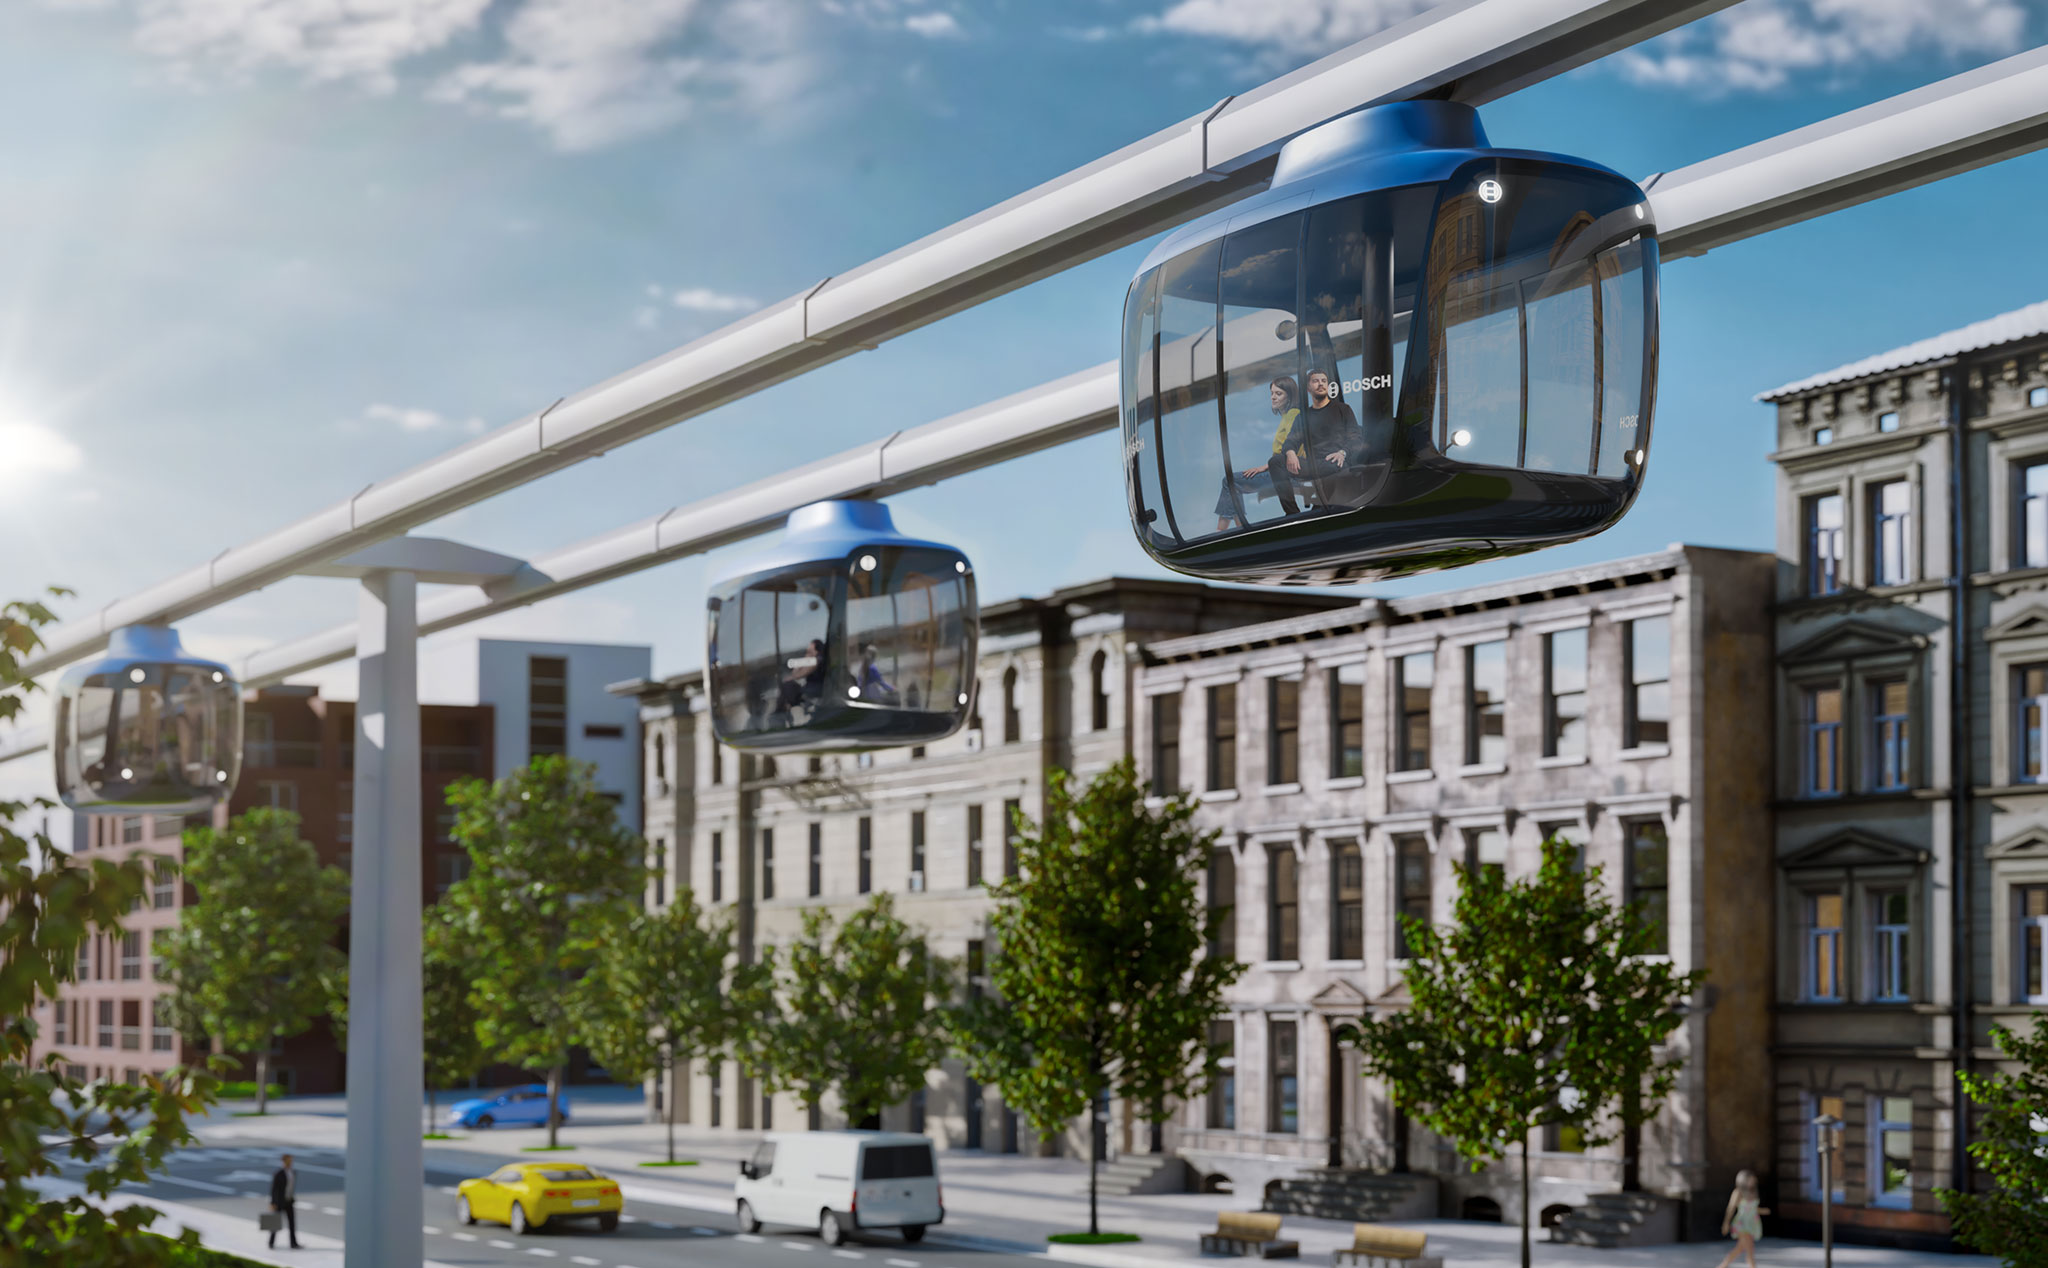 Đây là ý tưởng về phương tiện giao thông công cộng trong tương lai của Bosch